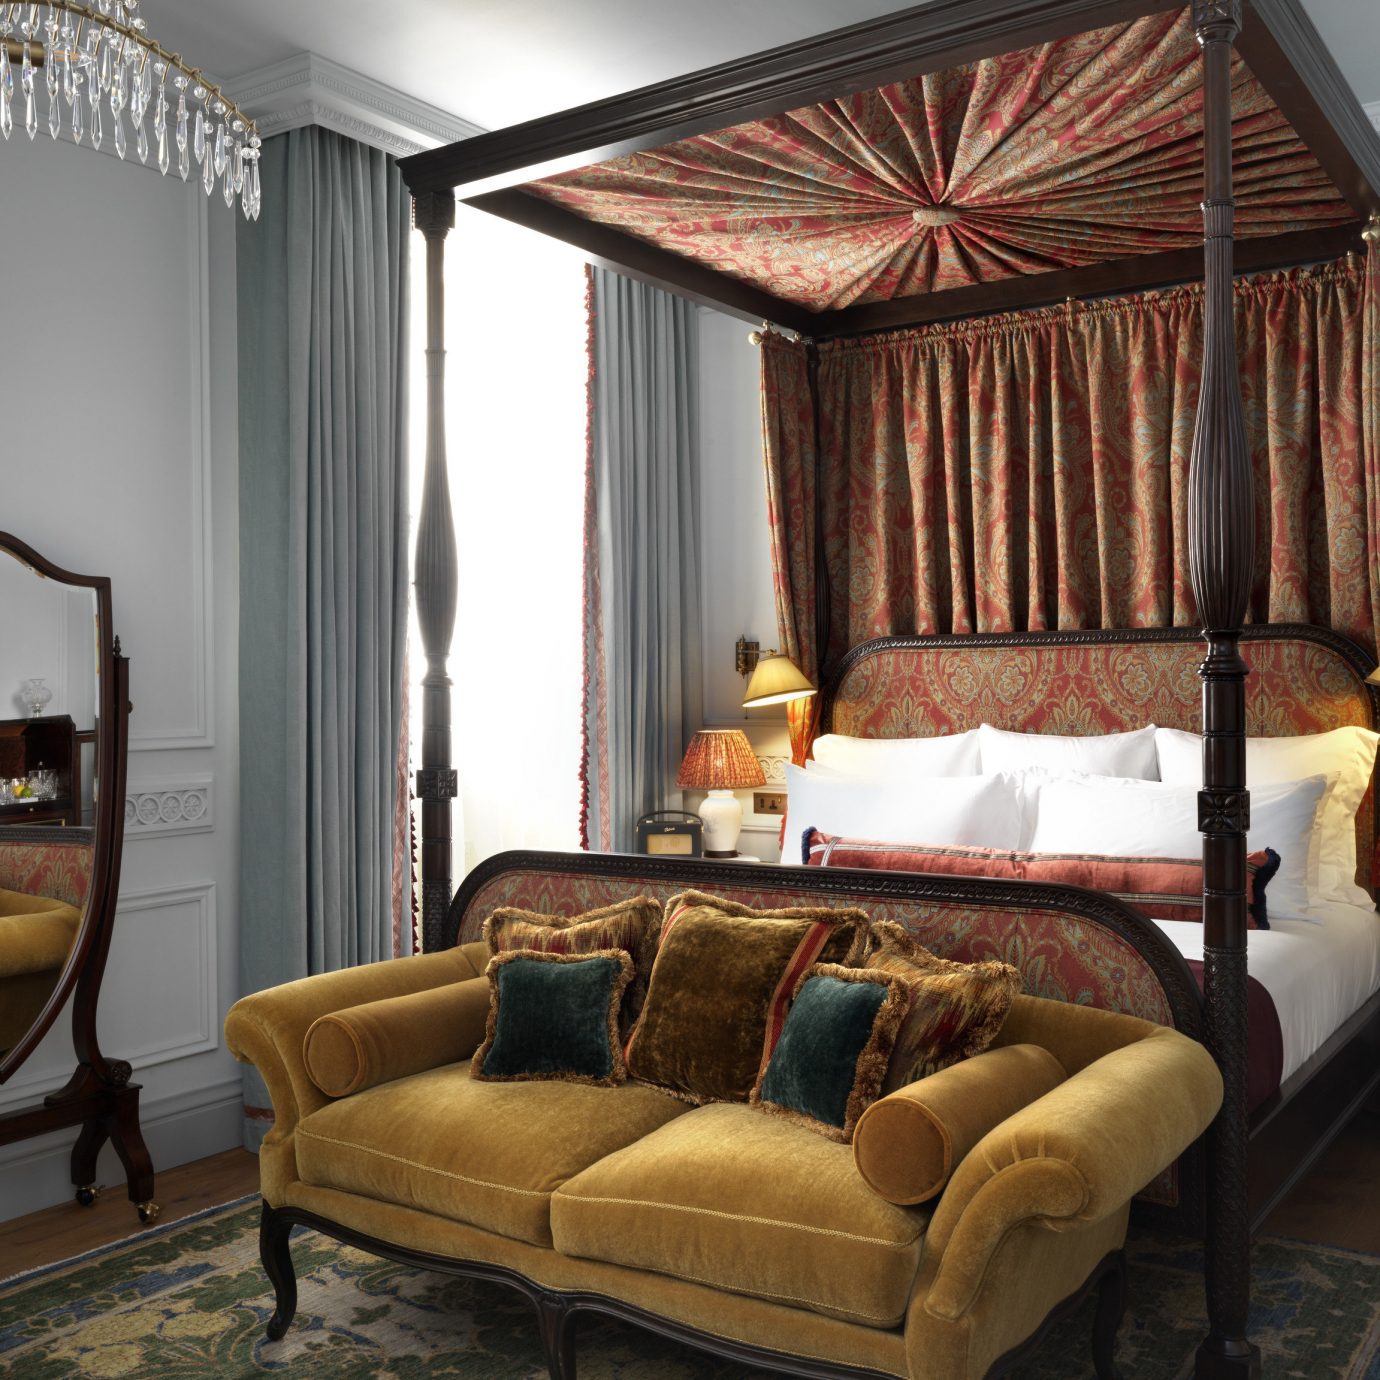 sofa living room window treatment Suite curtain home textile Bedroom interior designer decor